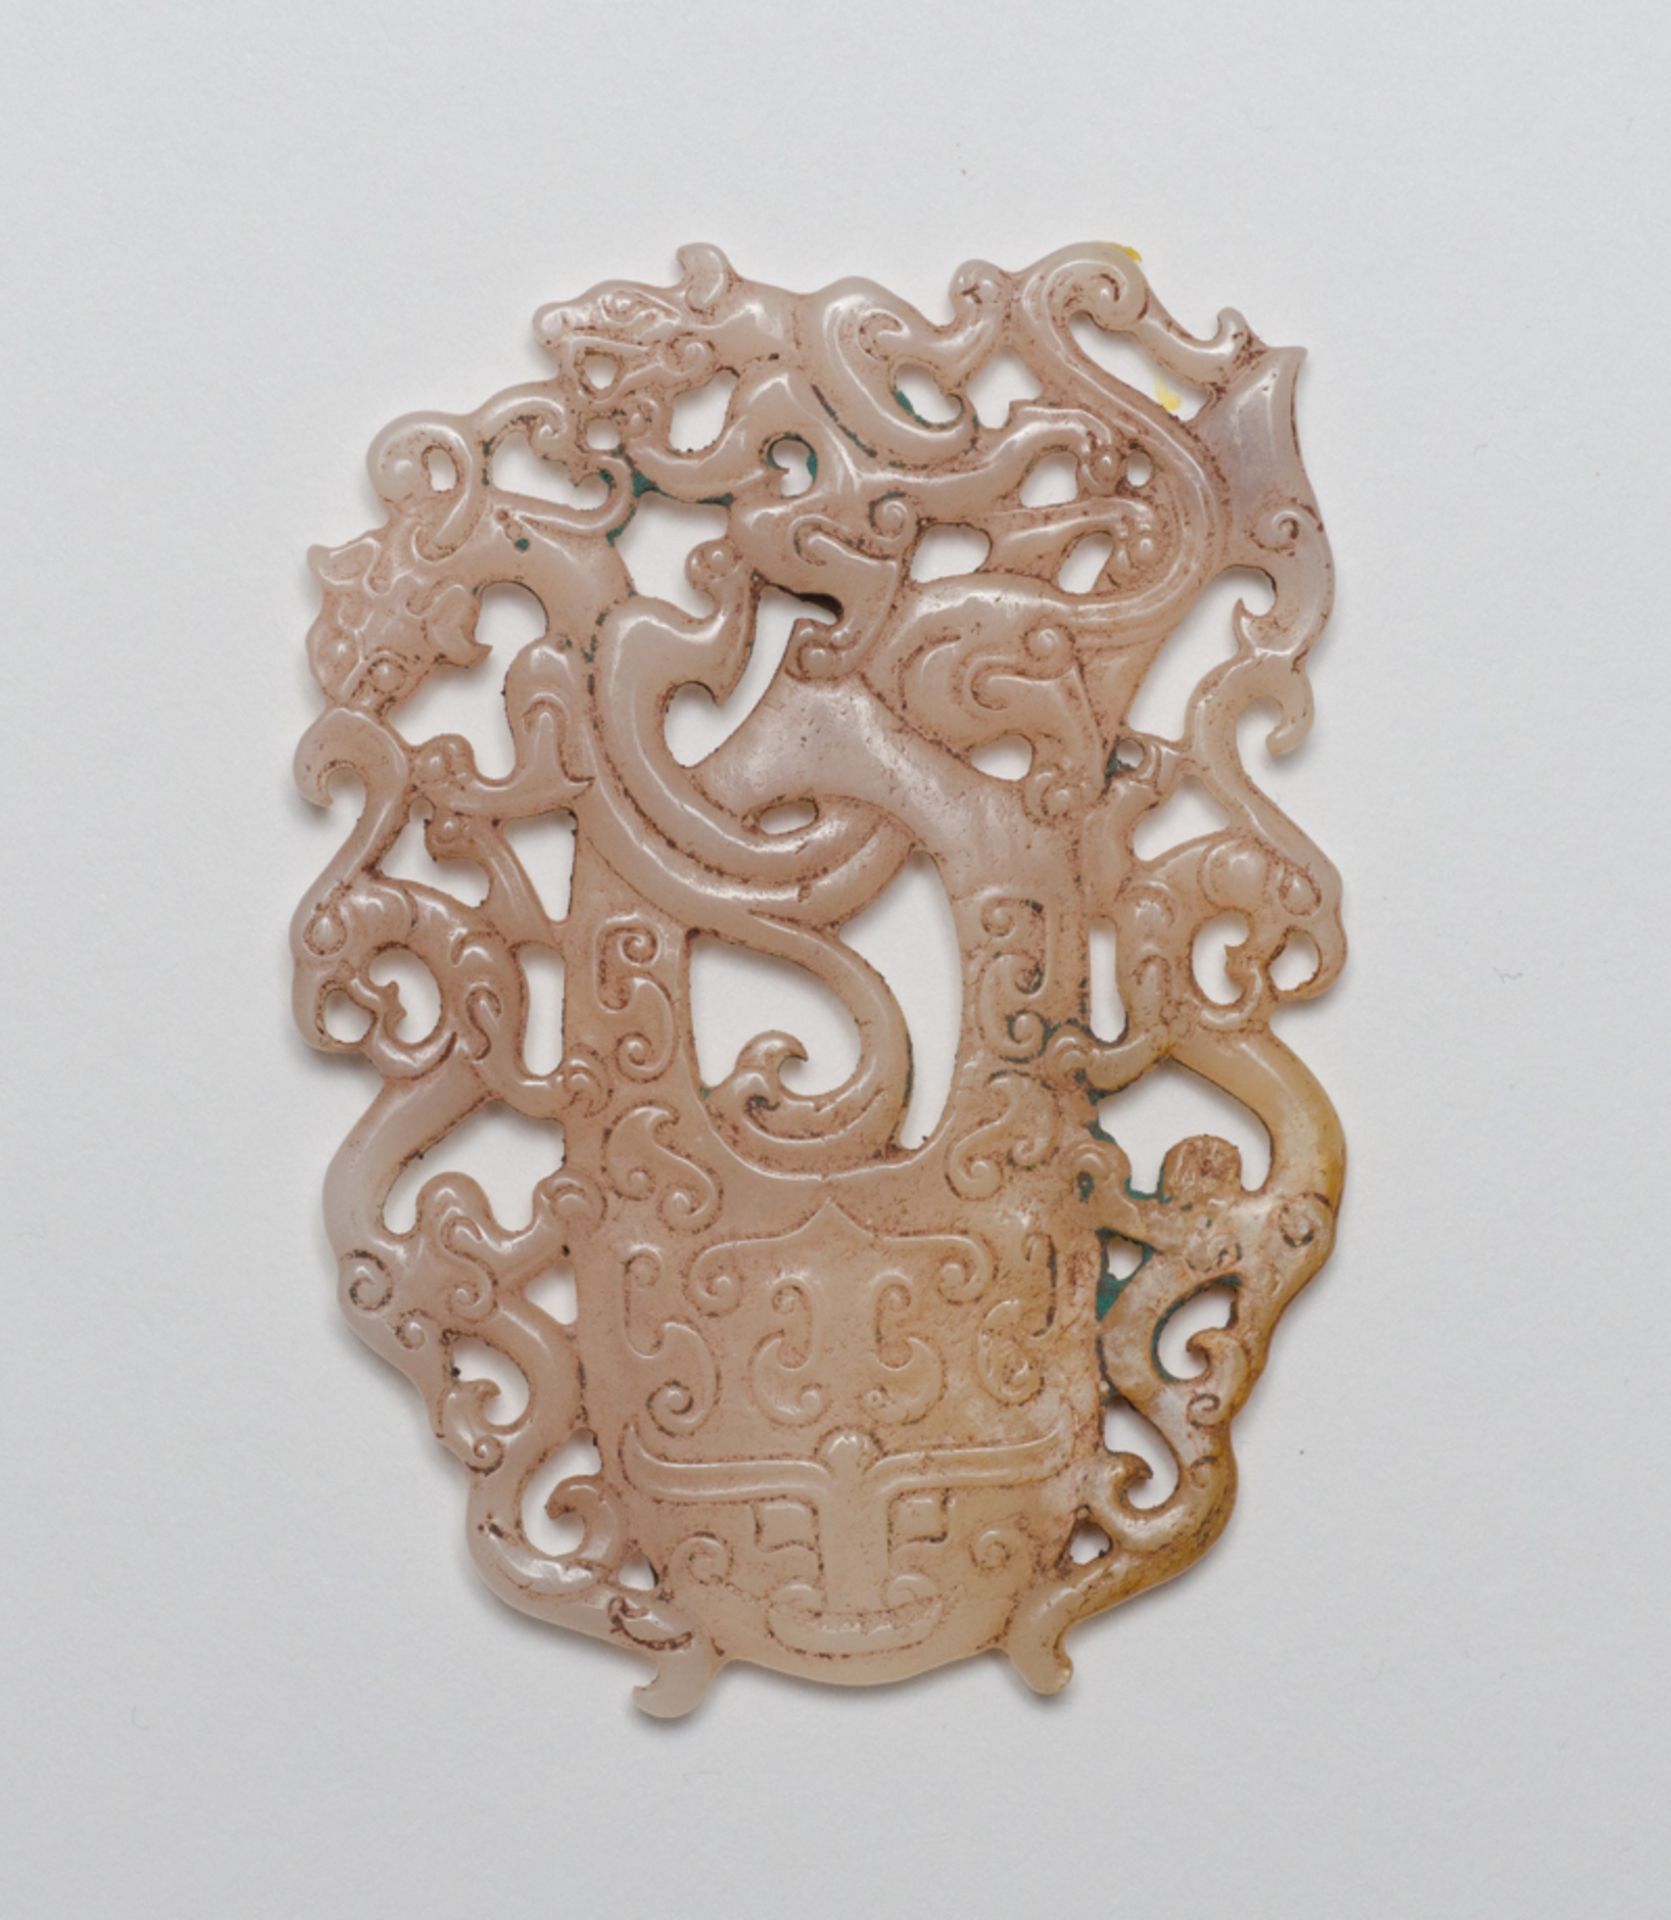 SCHMUCKANHÄNGER MIT DRACHE, TIGER UND PHÖNIX
Jade. China, Qing-Dynastie (1644- 1912), ca. 19. Jh.